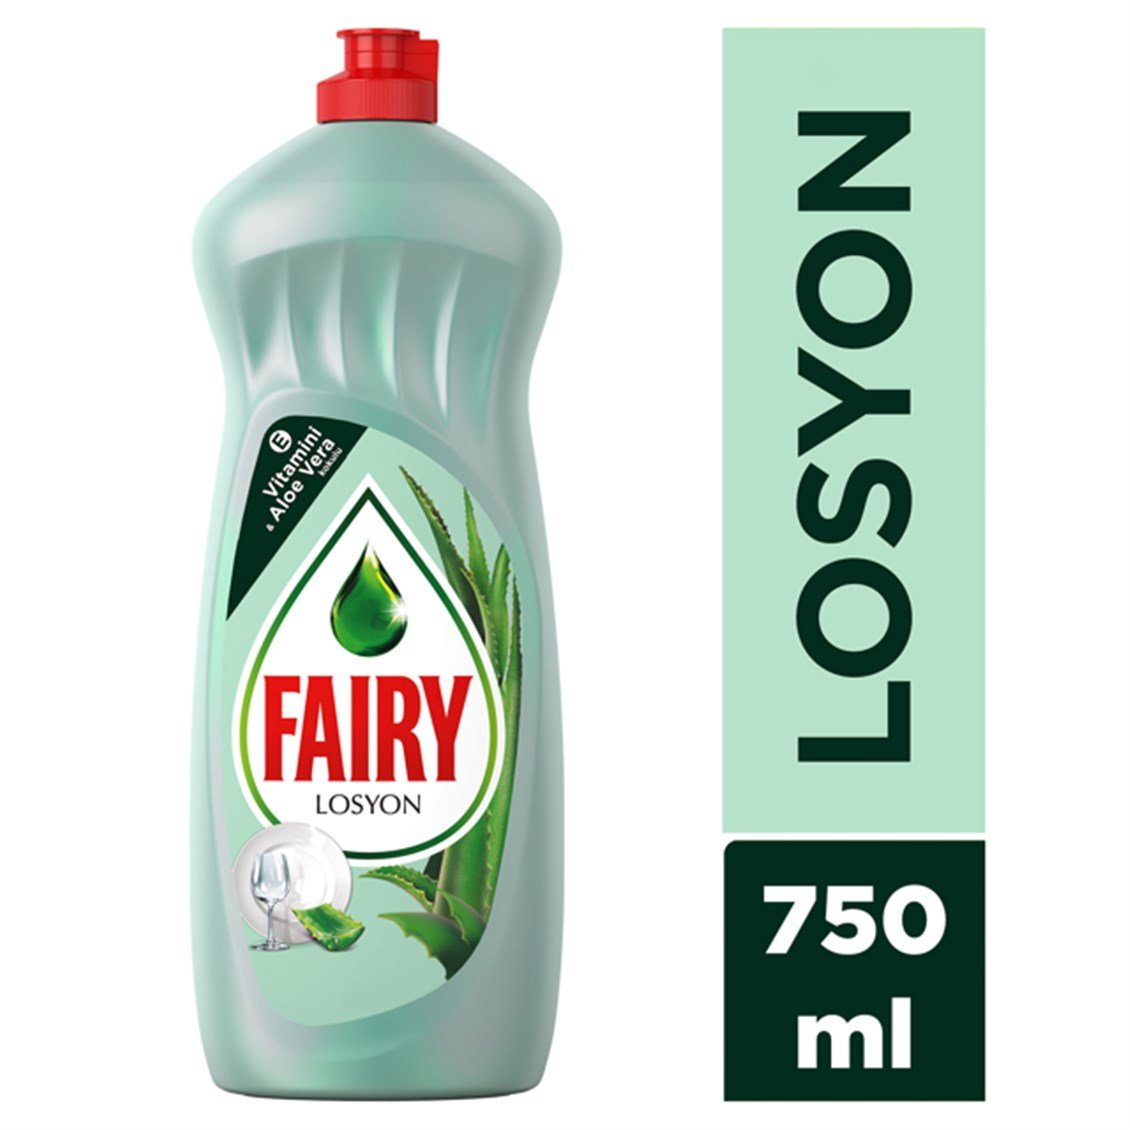 Fairy Losyon Sıvı Bulaşık Deterjanı 750 ml - Onur Market